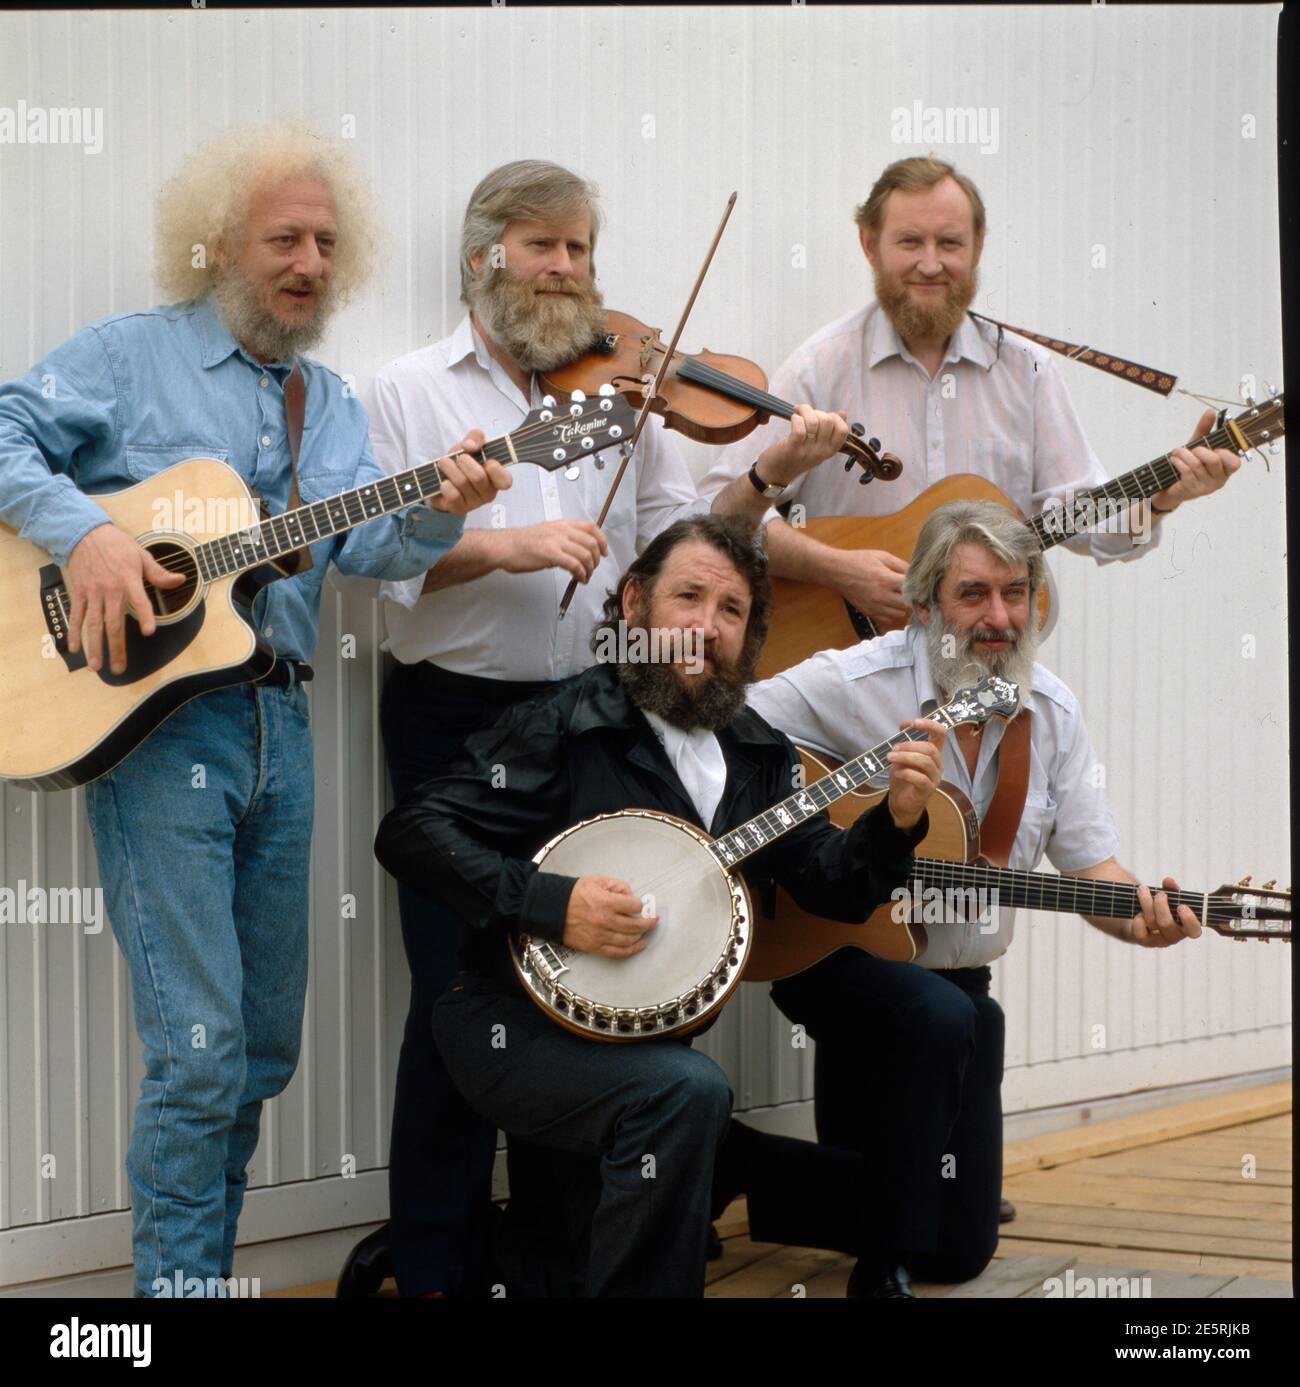 Irish folk band -Fotos und -Bildmaterial in hoher Auflösung - Seite 2 -  Alamy